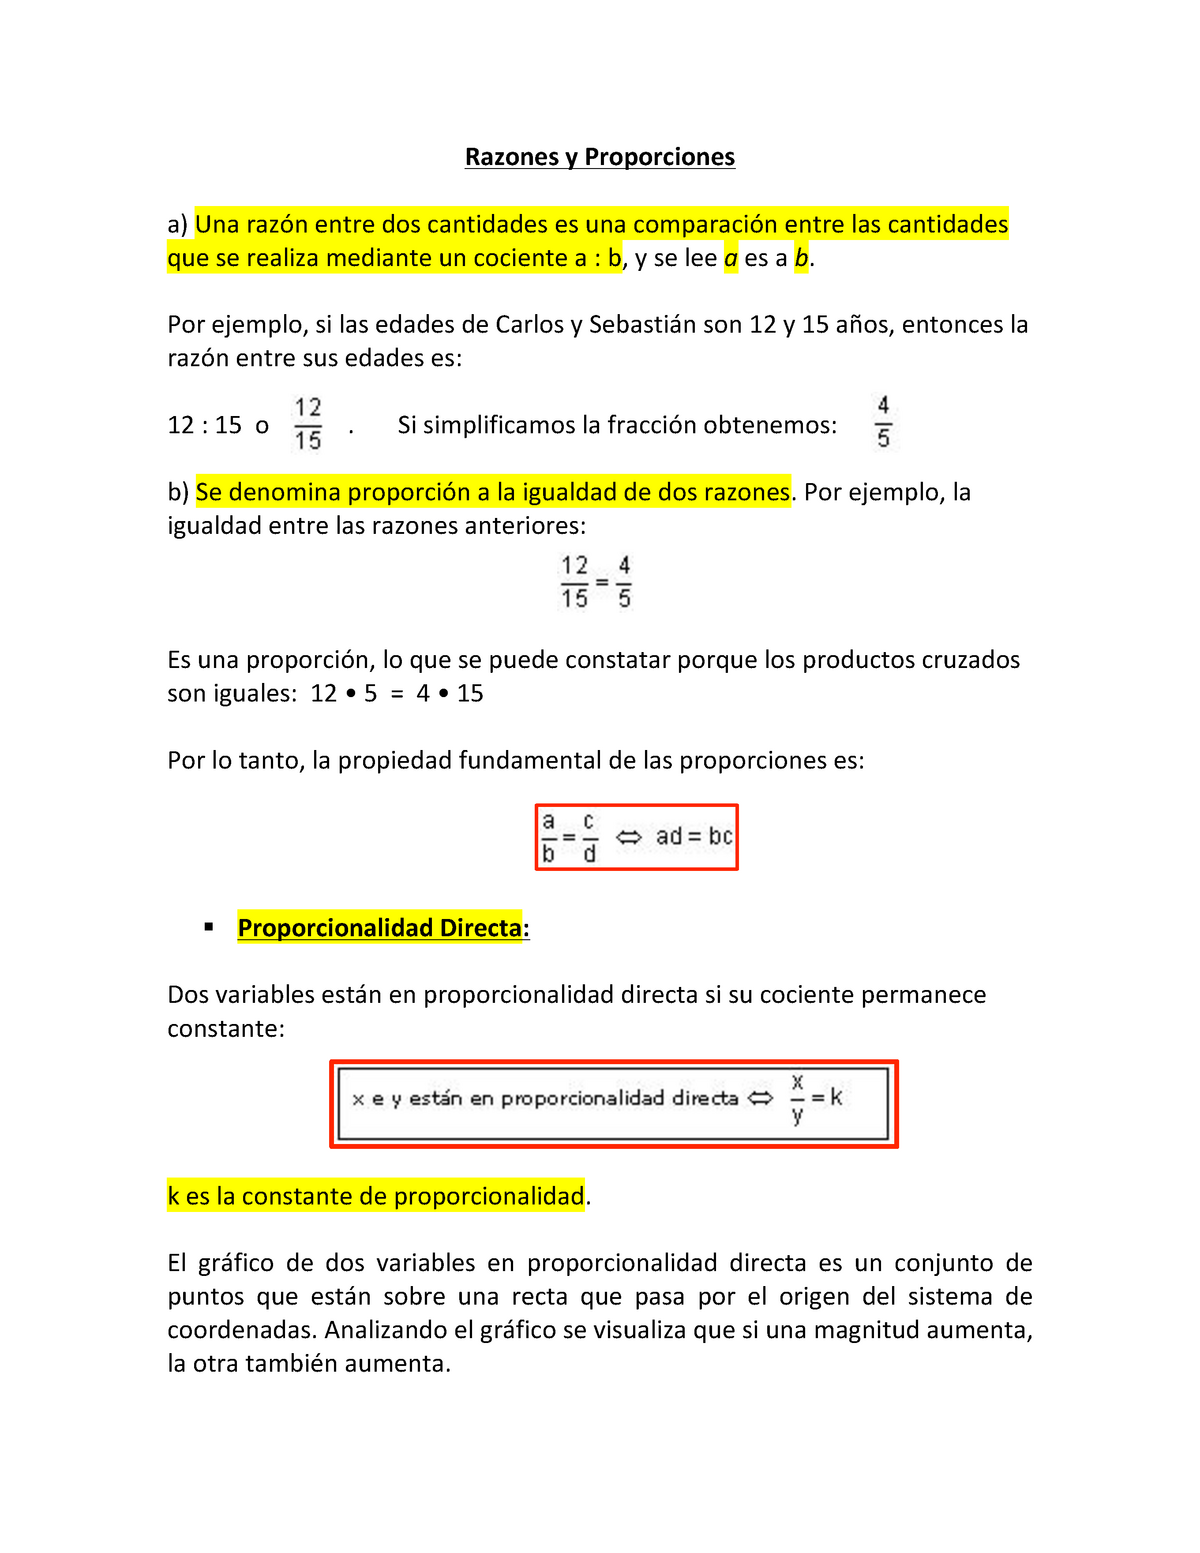 Resumen Razones y Proporciones - Razones y Proporciones a) Una razón entre  dos cantidades es una - Studocu